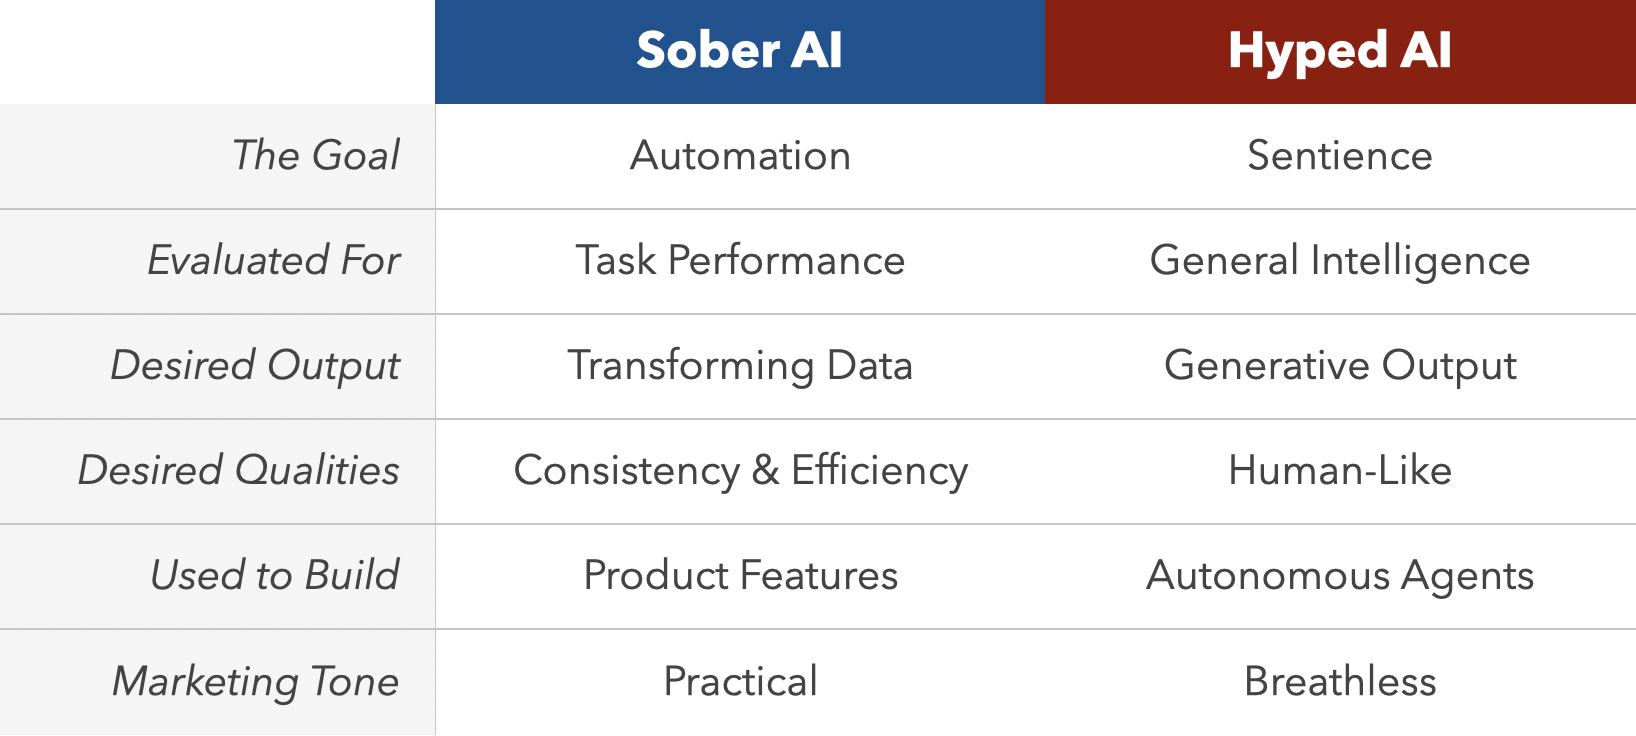 Sober AI vs Hyped AI